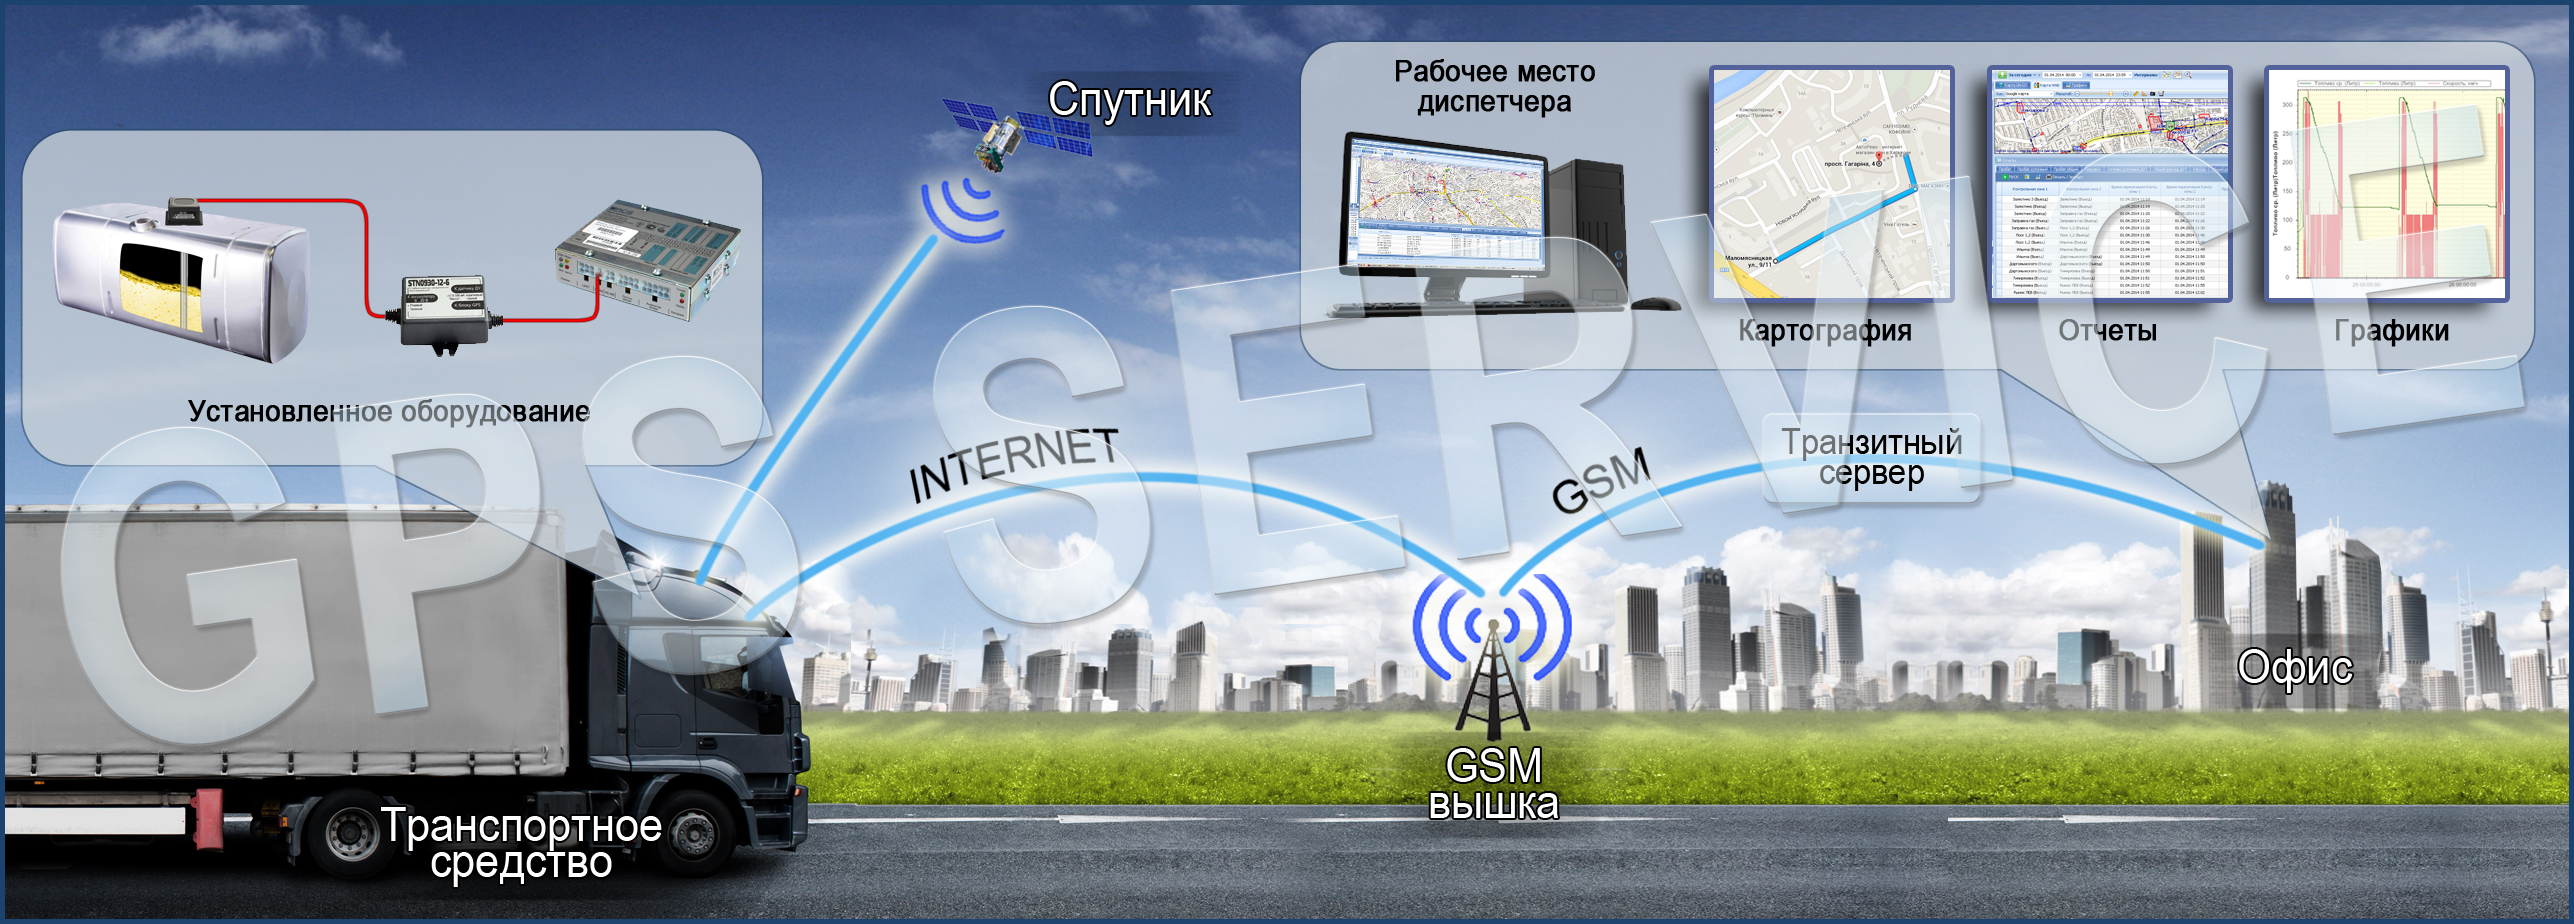 Контроль транспорта мониторинг gps. GPS мониторинг автотранспорта. Мониторинг транспорта GPS ГЛОНАСС. Система спутникового мониторинга. Системы контроля транспорта.